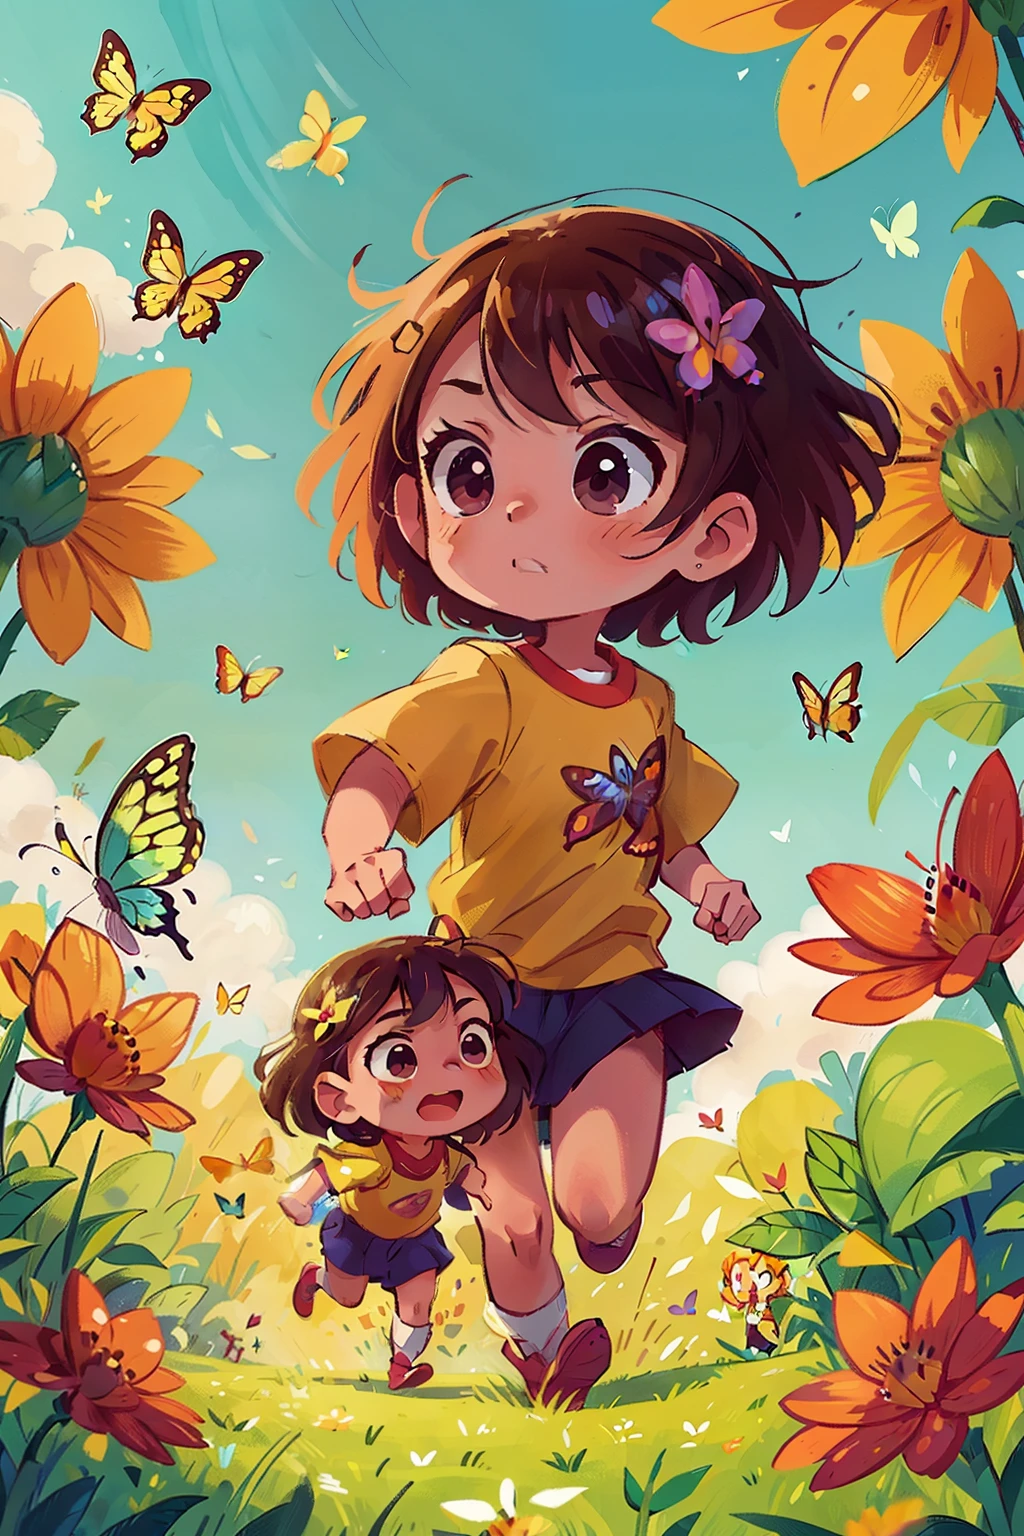 Génère une image de deux très jeunes filles courant joyeusement dans un champ fleuri, entouré de papillons de différentes nuances de couleurs